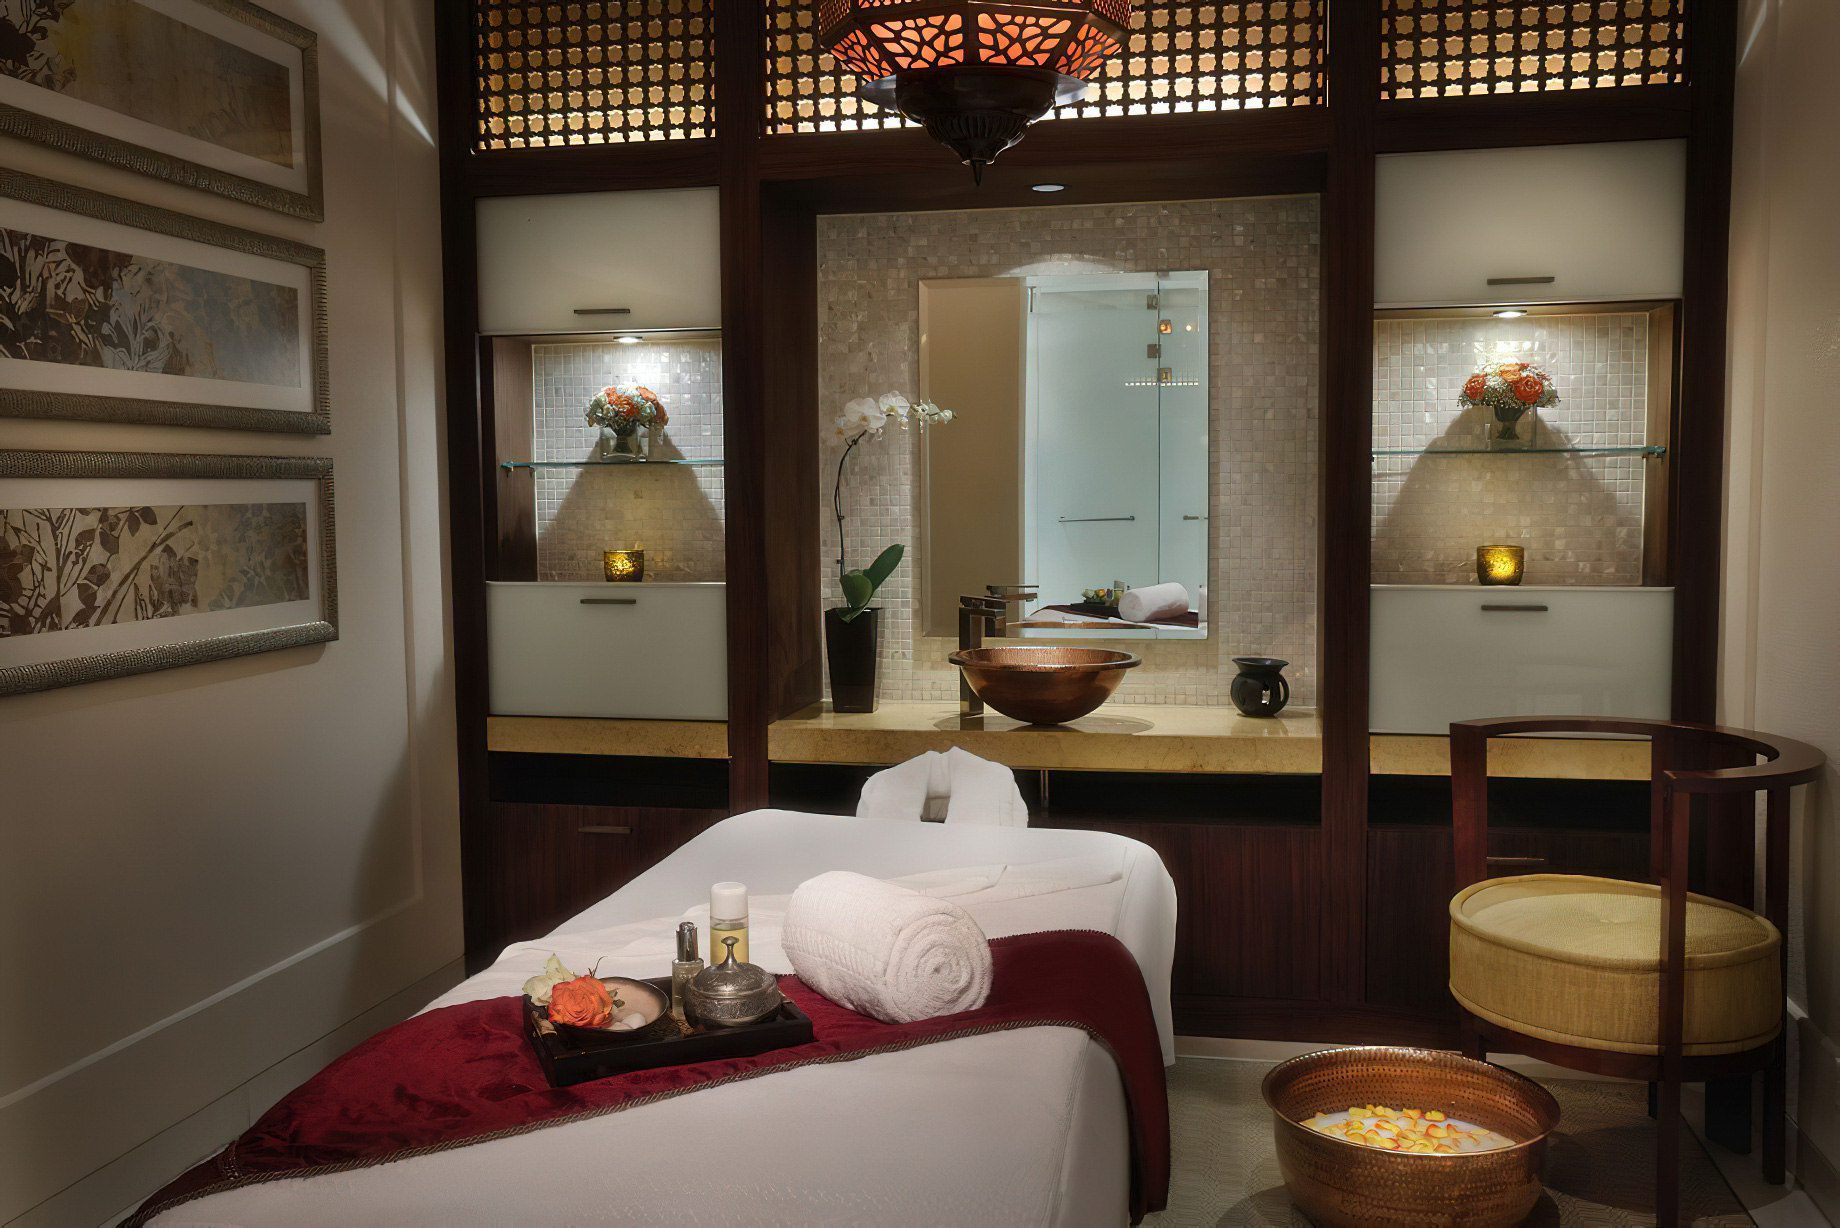 The Ritz-Carlton, Dubai Hotel – JBR Beach, Dubai, UAE – Spa Treatment Room